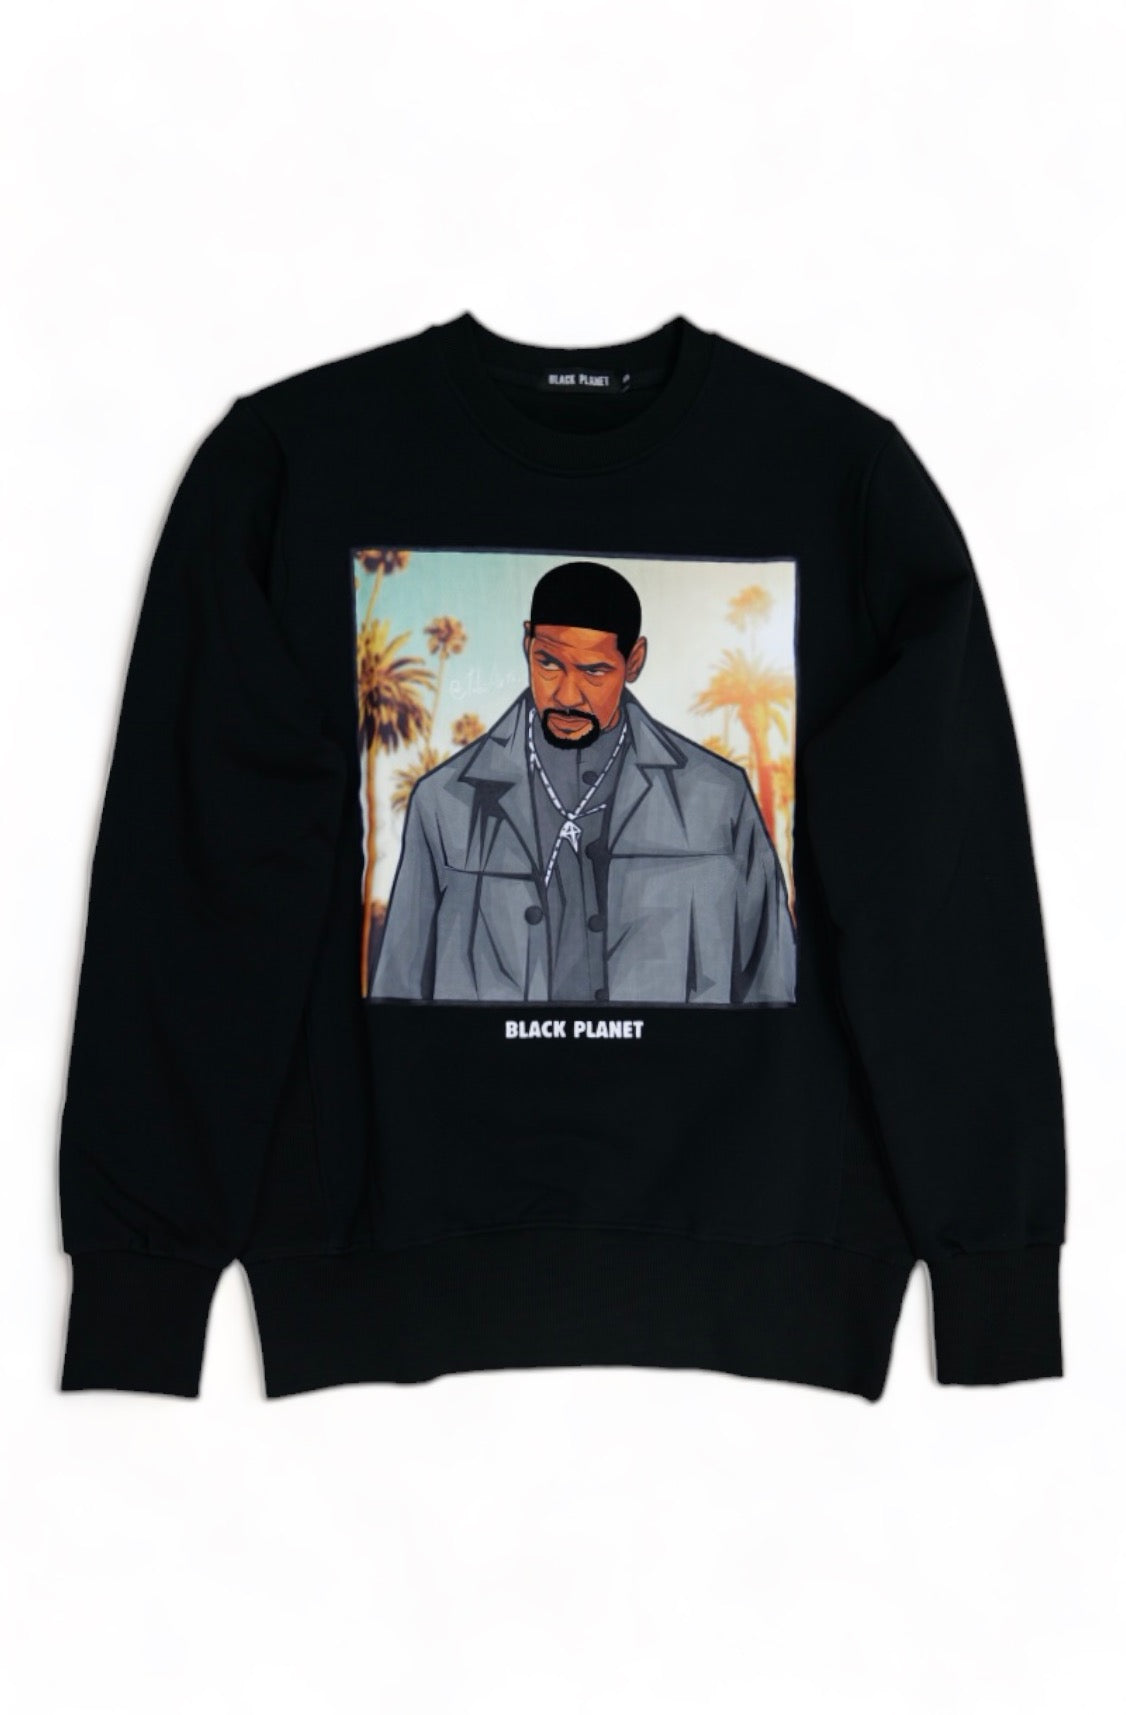 Black Planet Denzel Washington Sweater